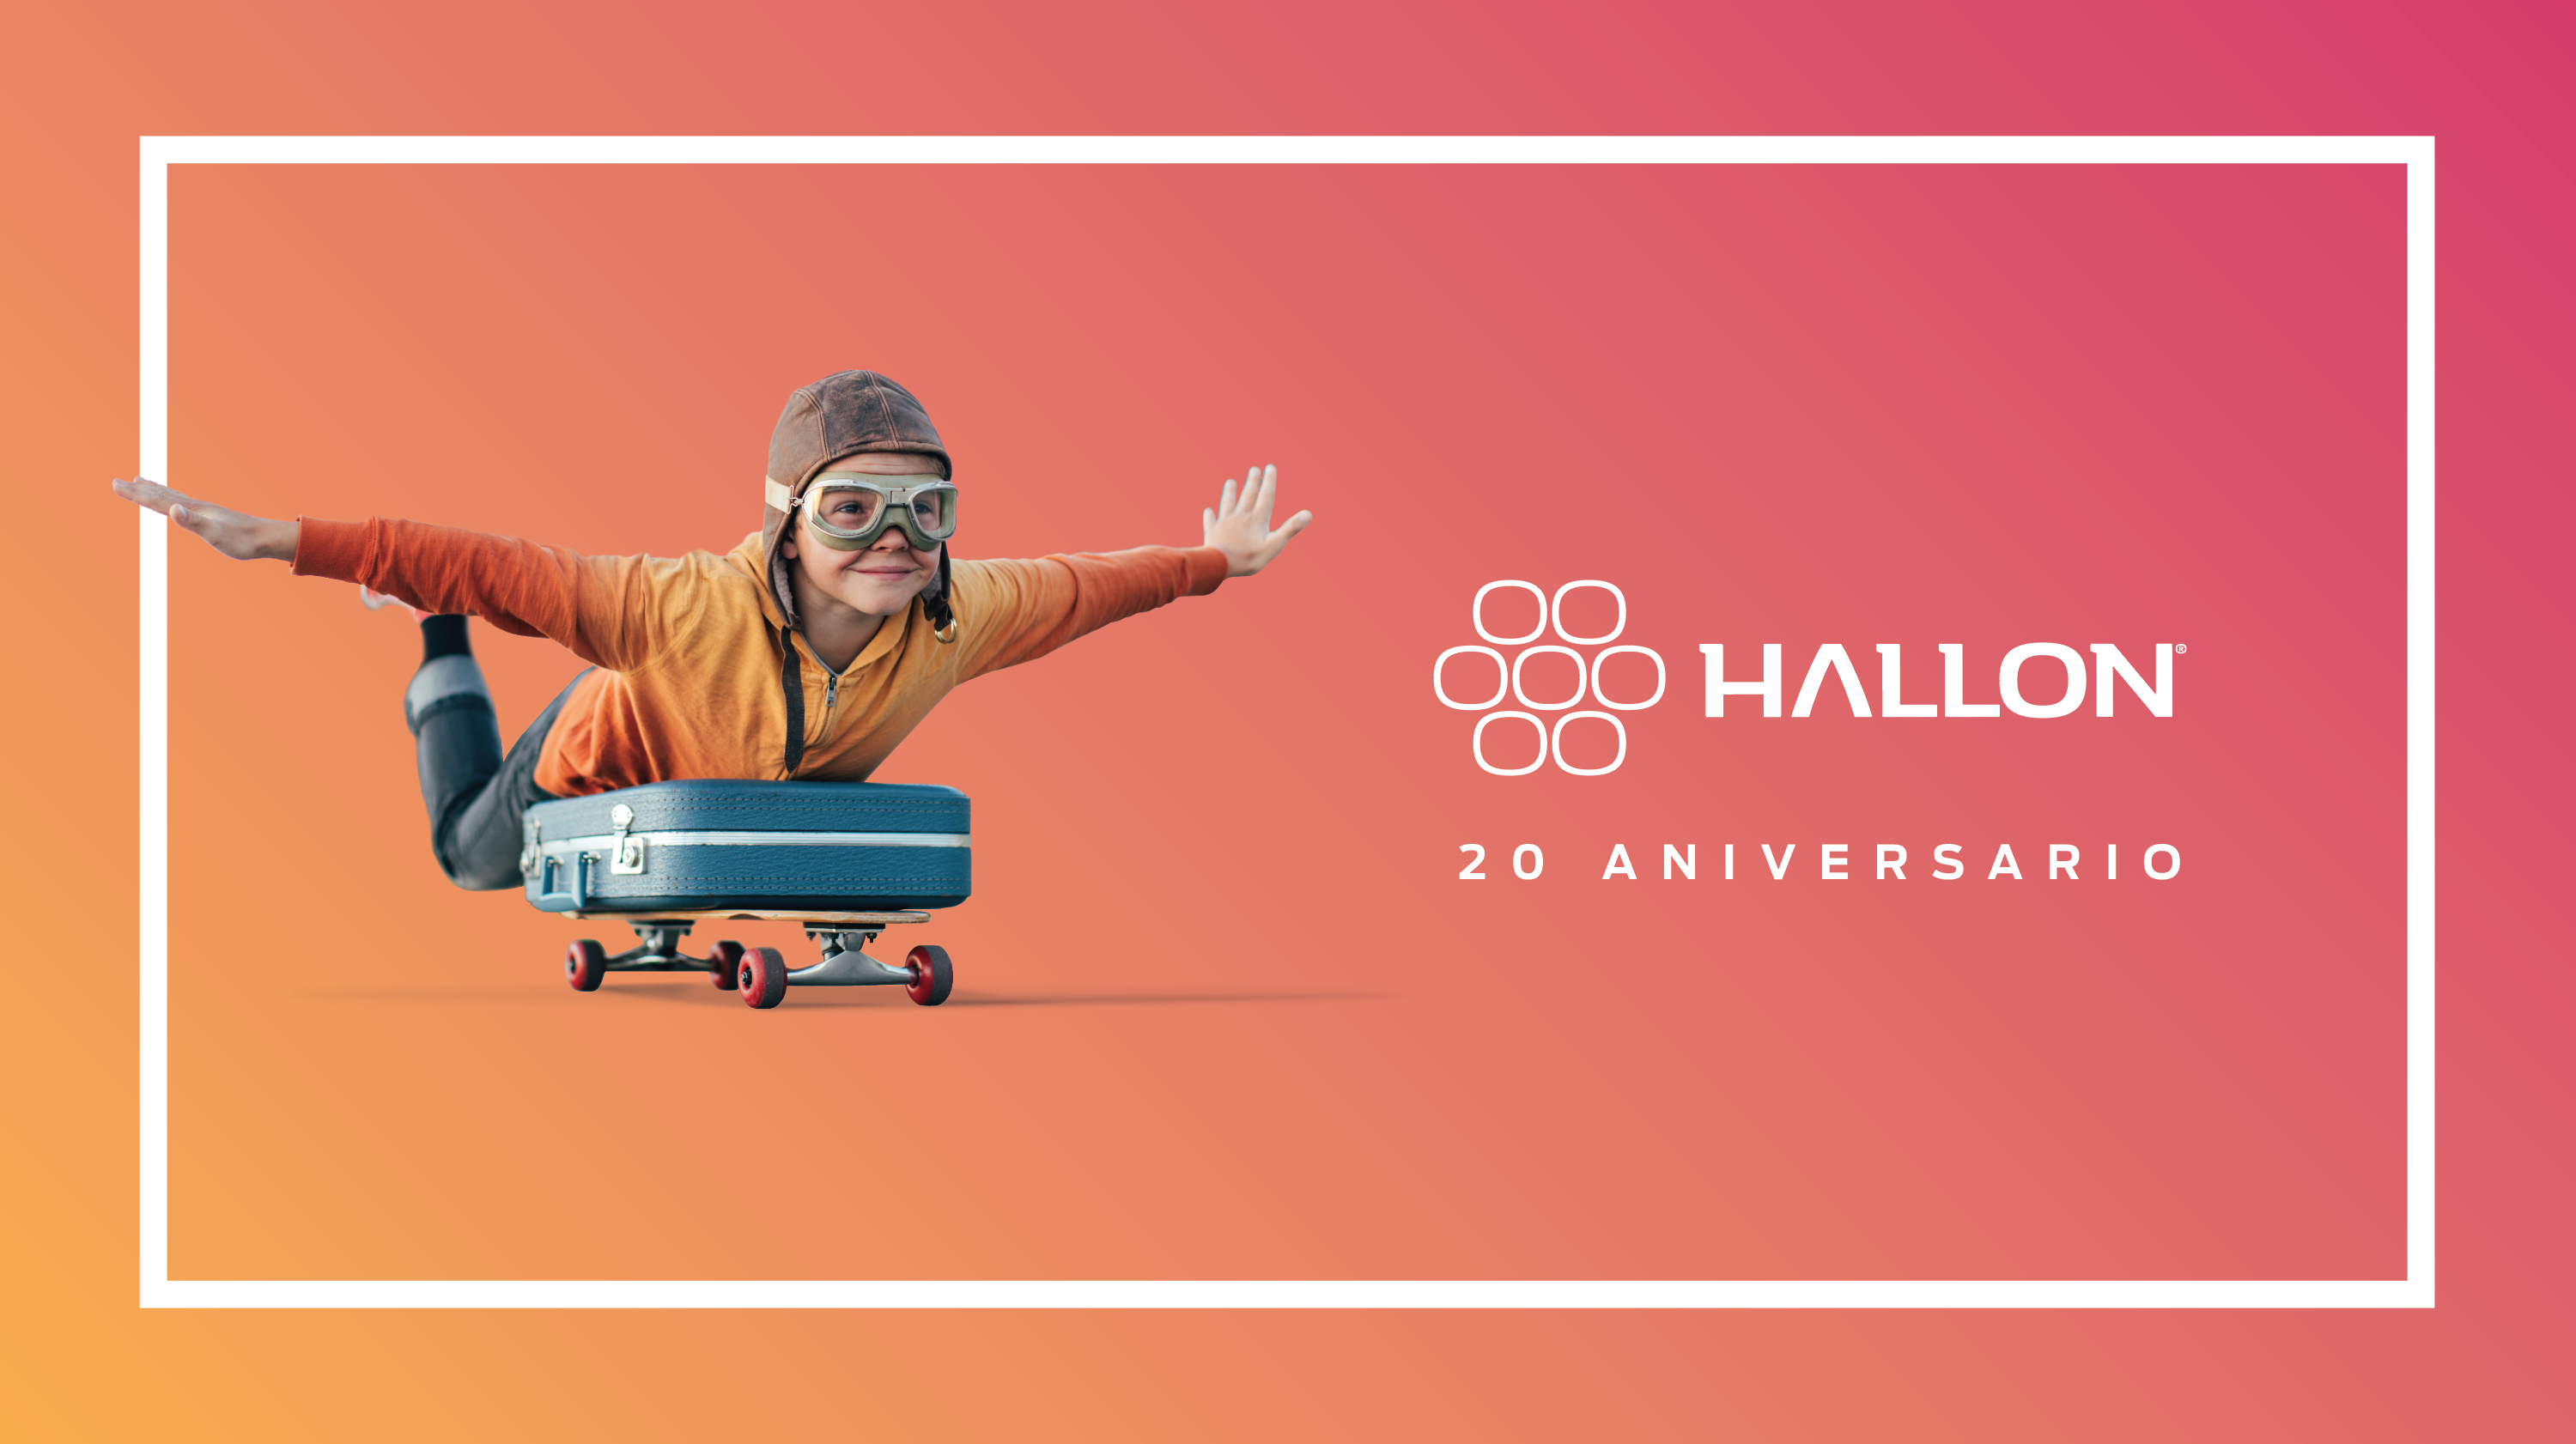 Top Comunicación | Hallon cumple 20 años y continúa con su expansión internacional